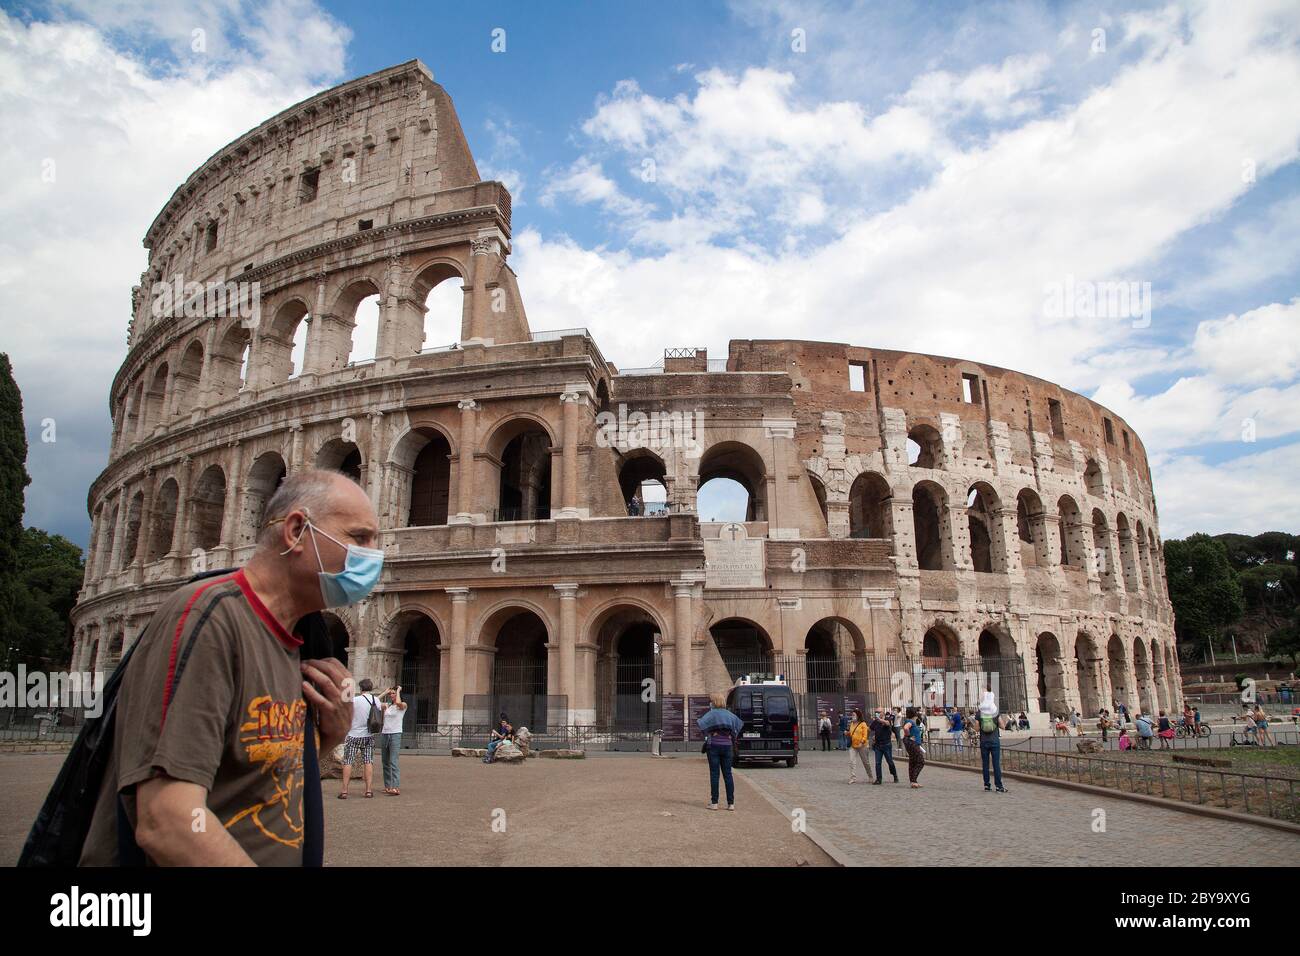 Riapertura Italia, avvio fase 3. L'uomo che indossa una maschera protettiva passa davanti al Colosseo dopo il blocco causa Coronavirus, il Martedì, 02 giugno 2020. Foto Stock